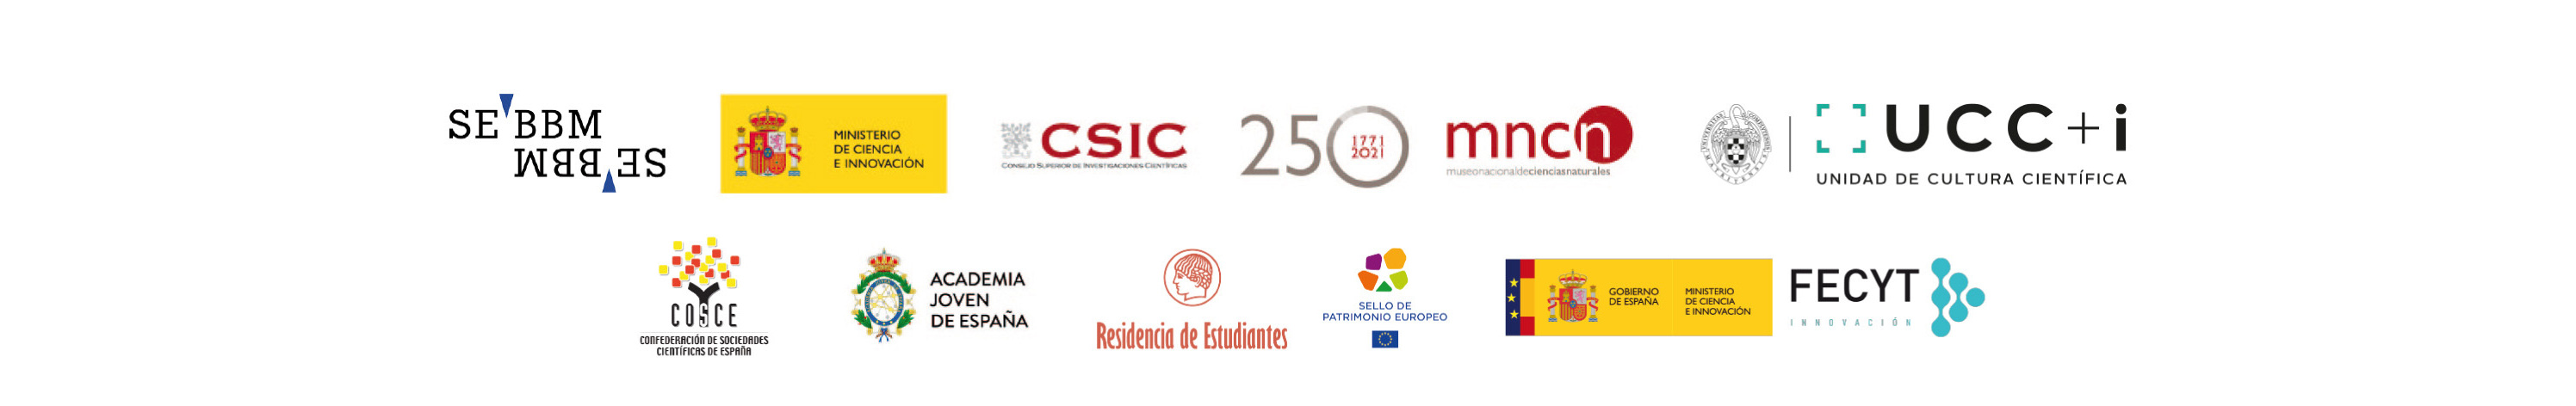 Logos de organizadores y patrocinadores de Falling Walls Lab Spain